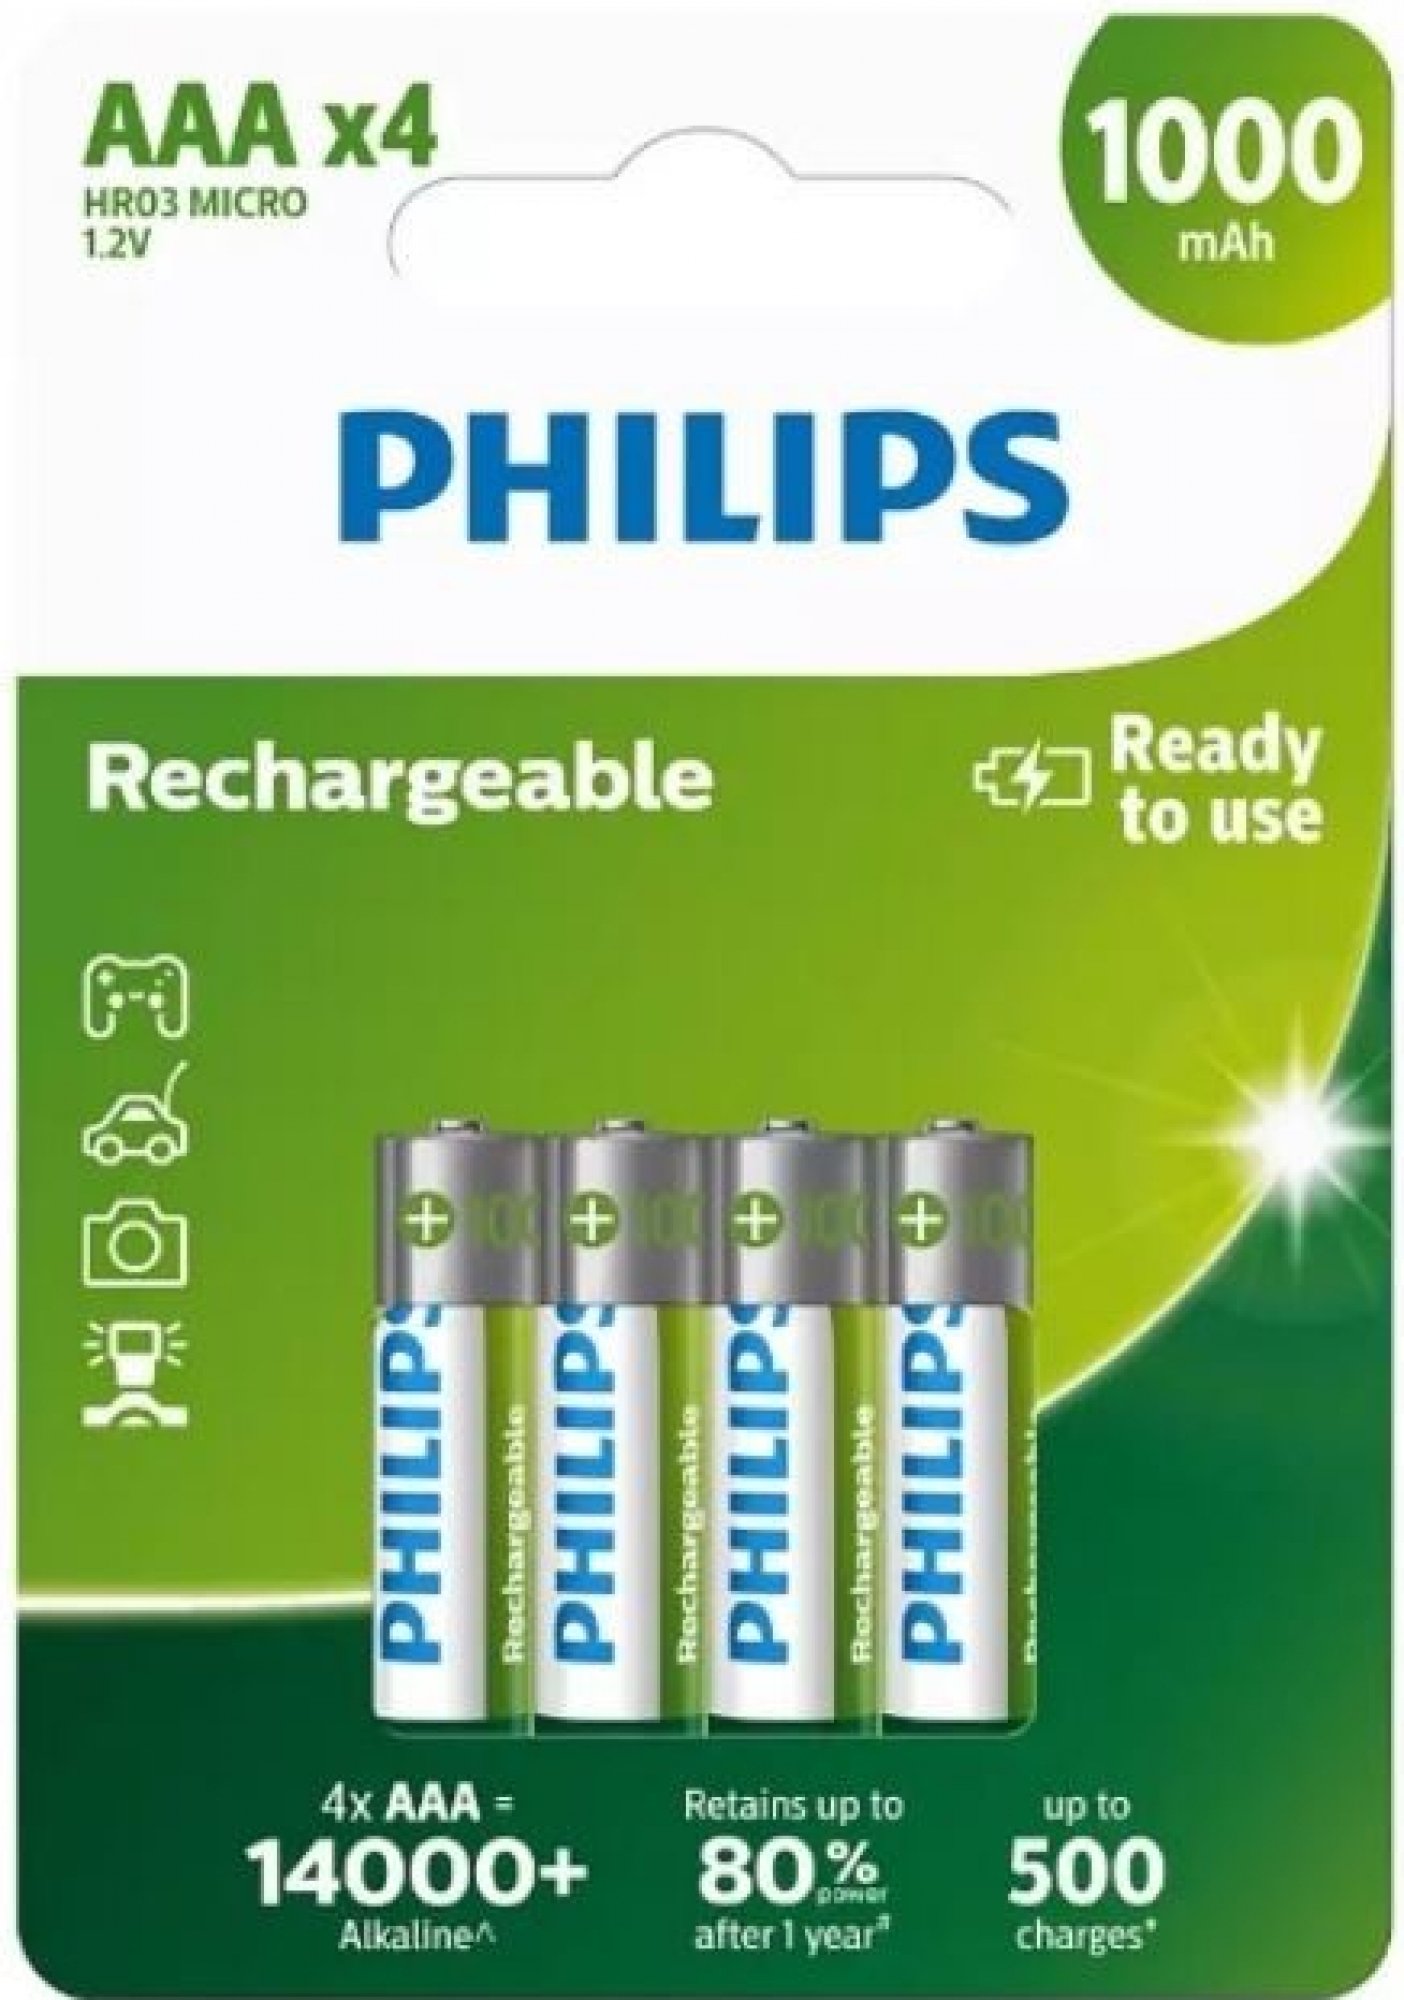 Philips AAA 1000mAh 4ks R03B4RTU10/10 nabíjecí mikrotužka Philips HR03